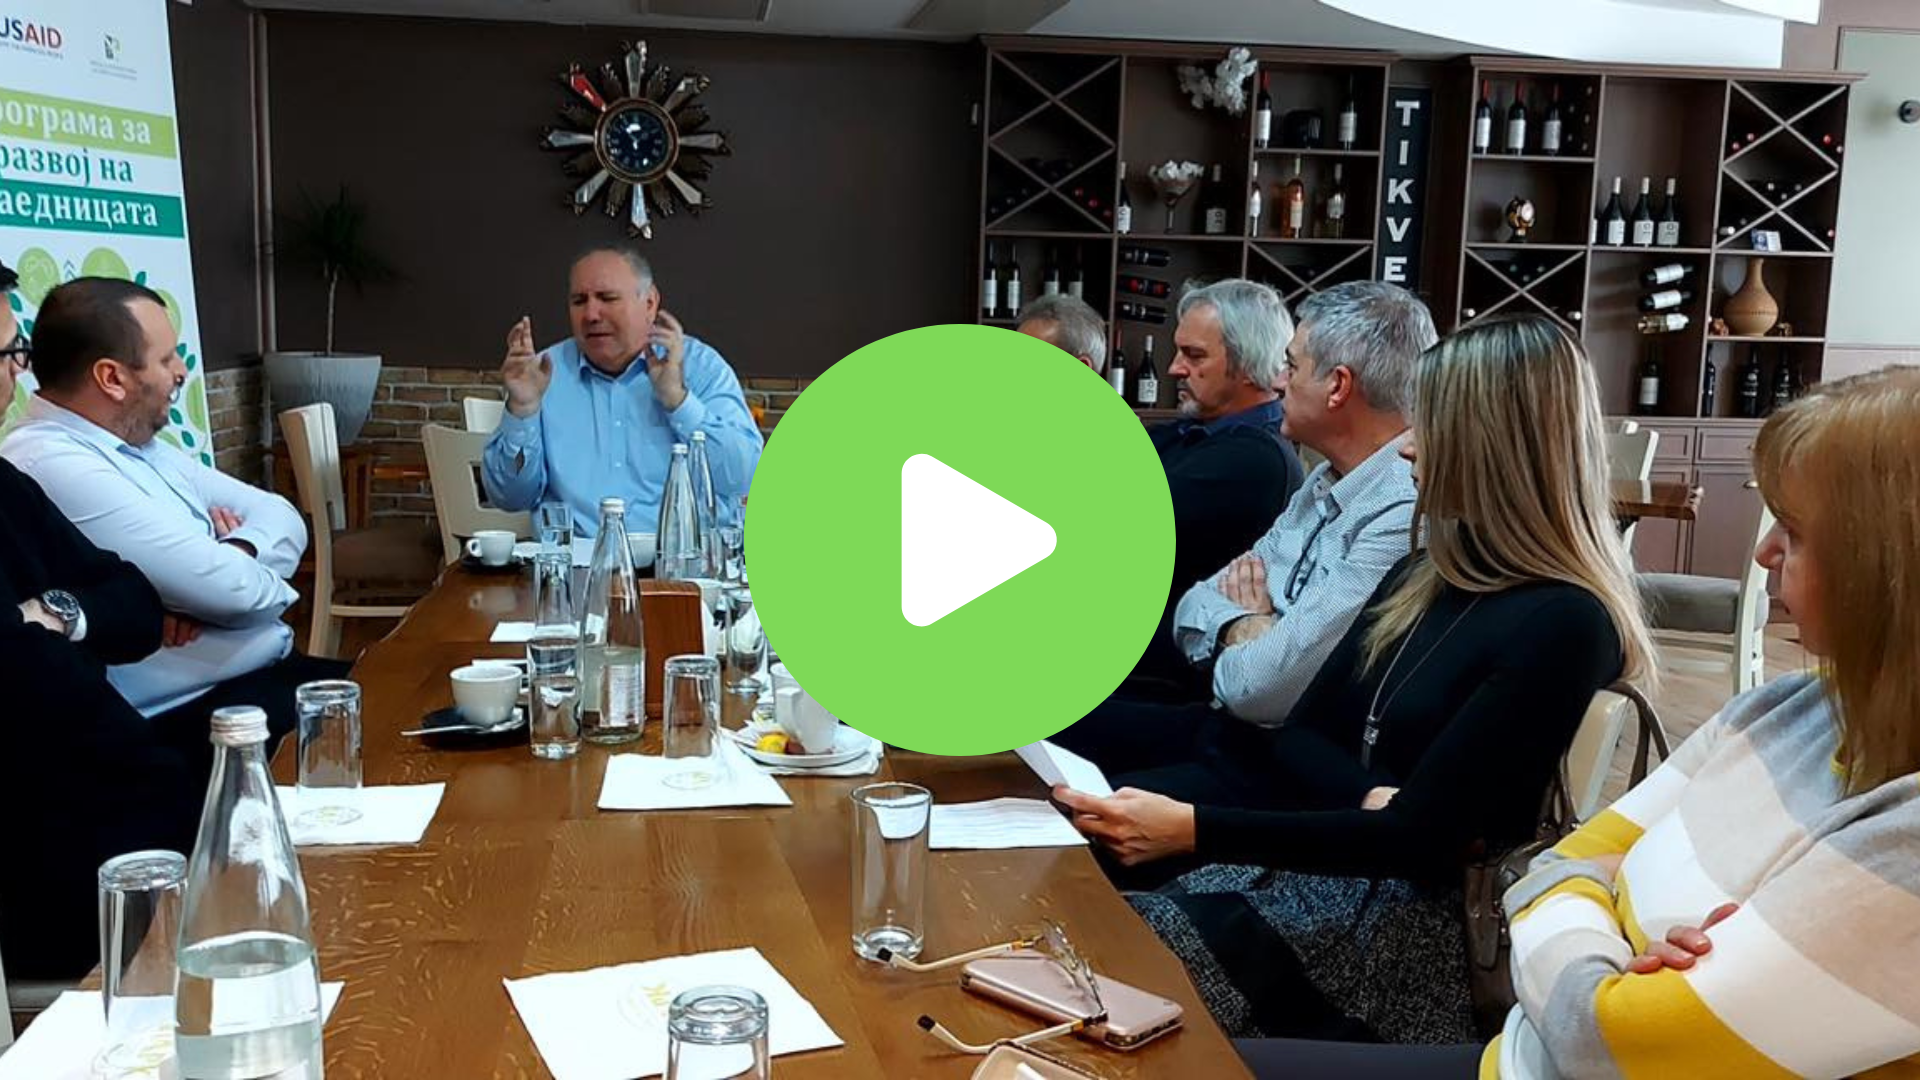 (VIDEO) New cross-sector advisory group with LAG Belasica-Ograzden